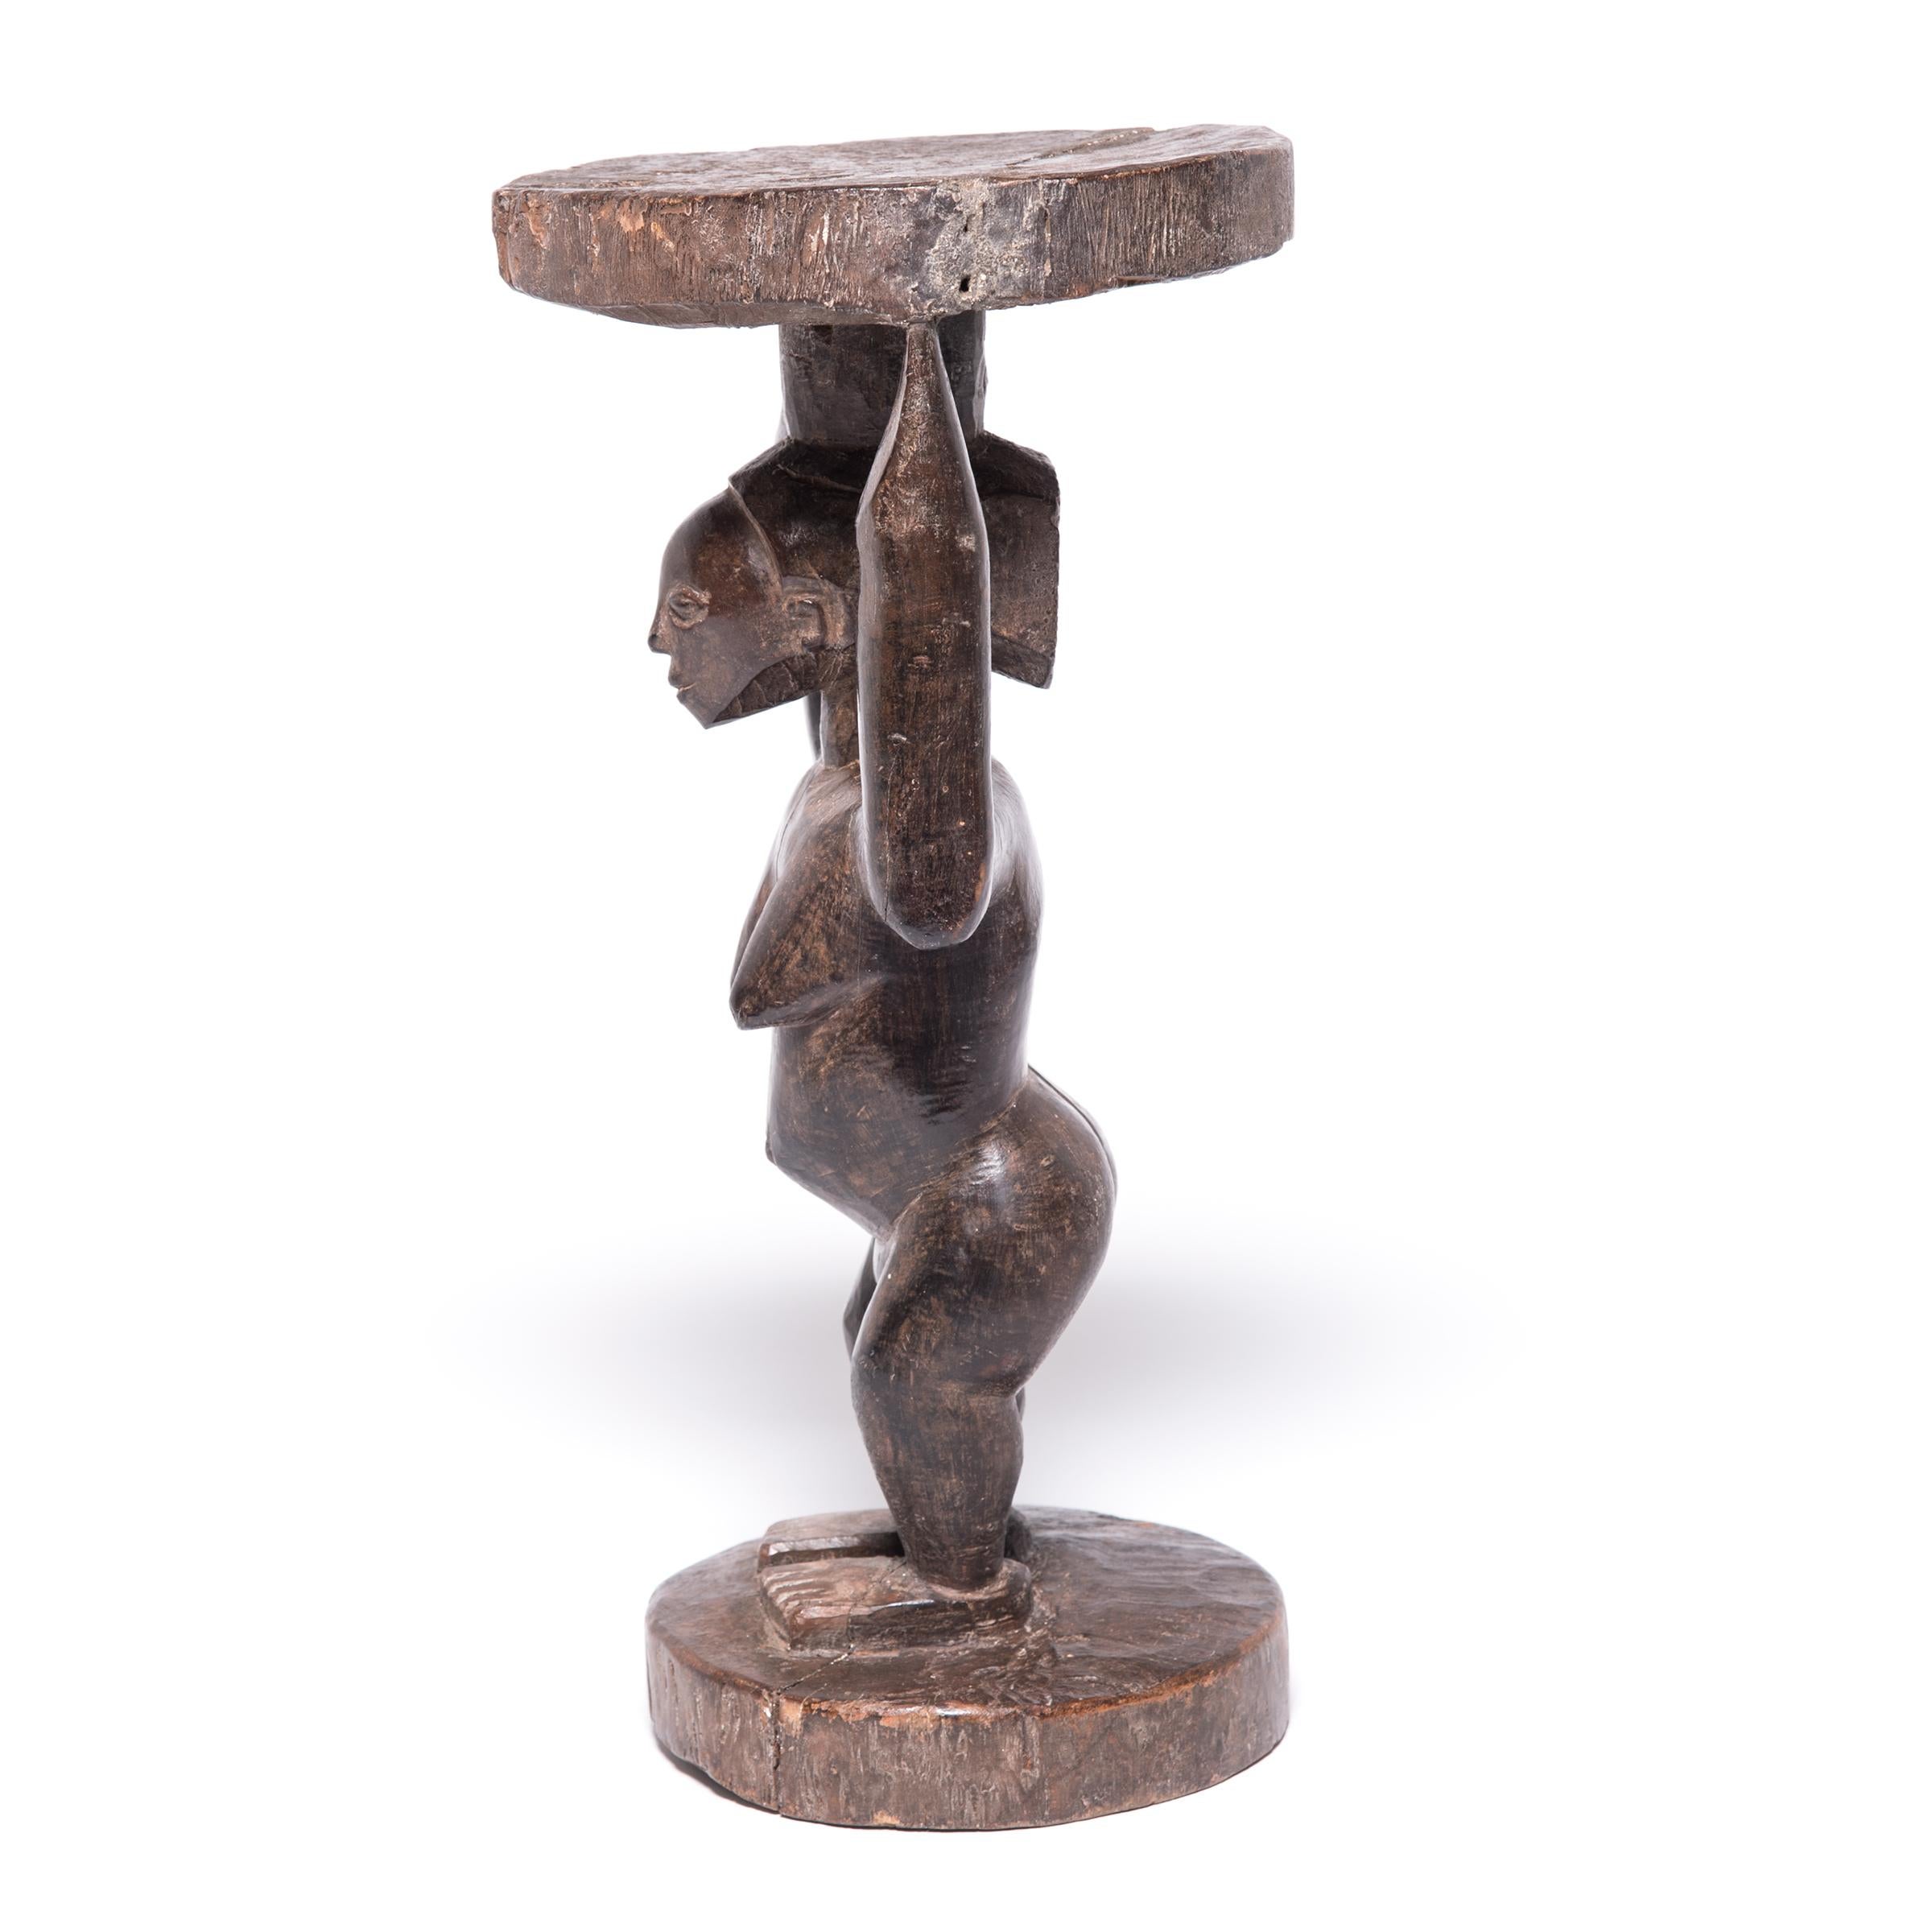 Ce tabouret du peuple Luba du Zaïre est représentatif de leur style classique. Un simple tronc d'arbre a été sculpté en colonne, puis approfondi jusqu'à ce que la silhouette robuste d'une femme apparaisse. Elle soutient le siège circulaire,